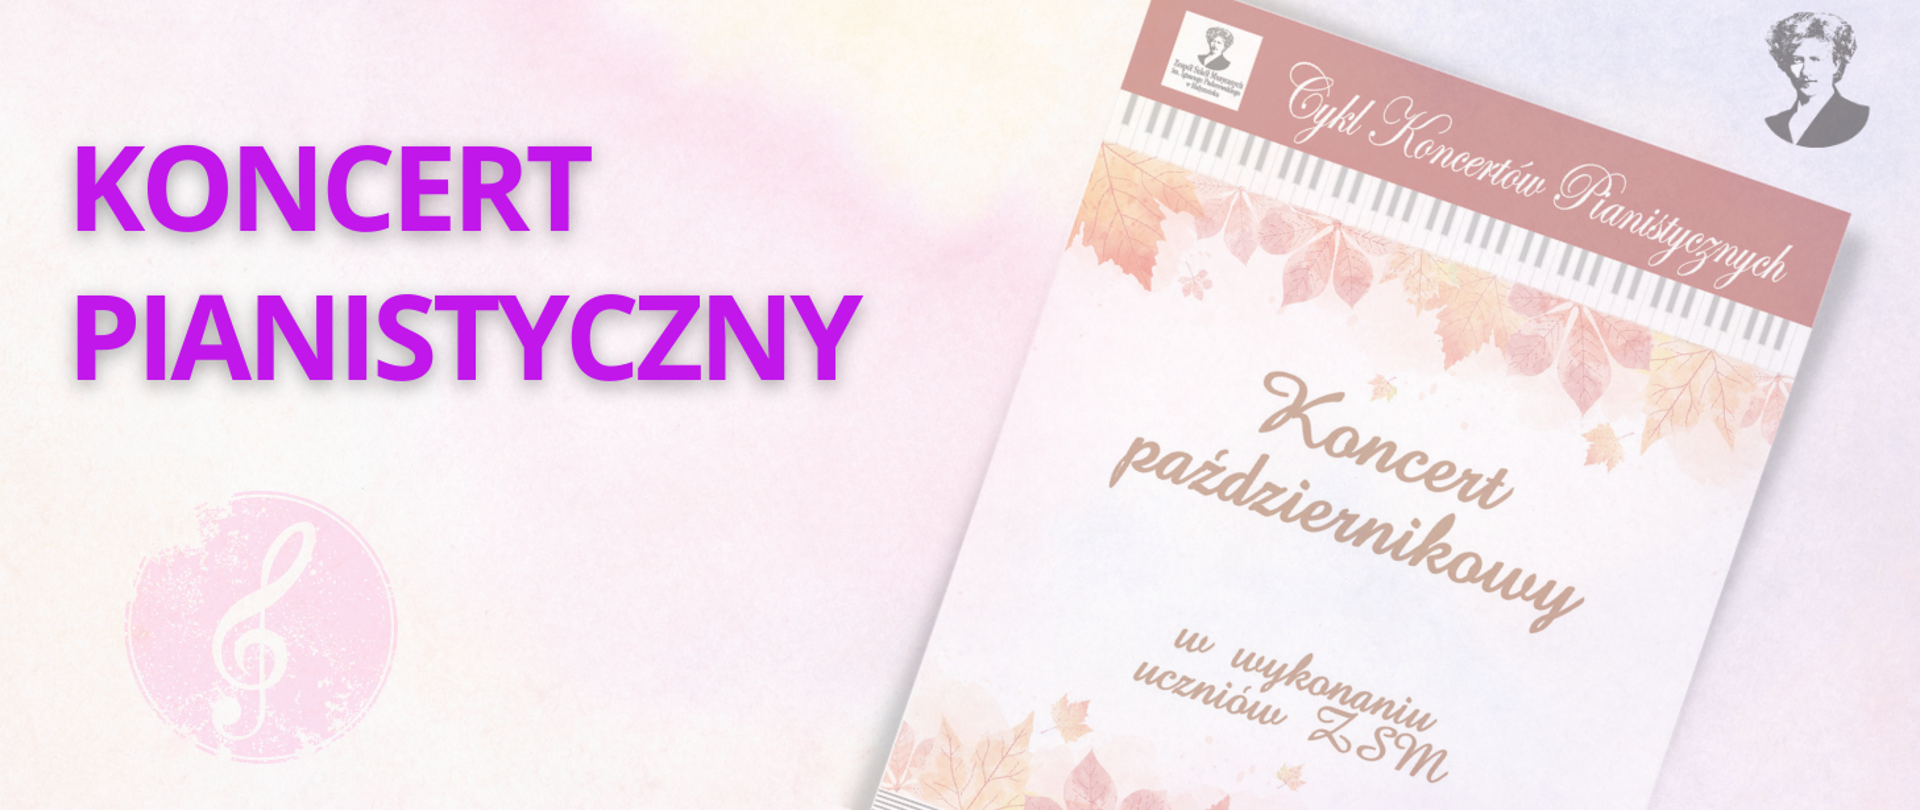 Koncert pianistyczny w wykonaniu uczniów ZSM
20.10.2022
Aula Koncertowa ZSM
Białystok, ul. Podleśna 2
Wstęp wolny